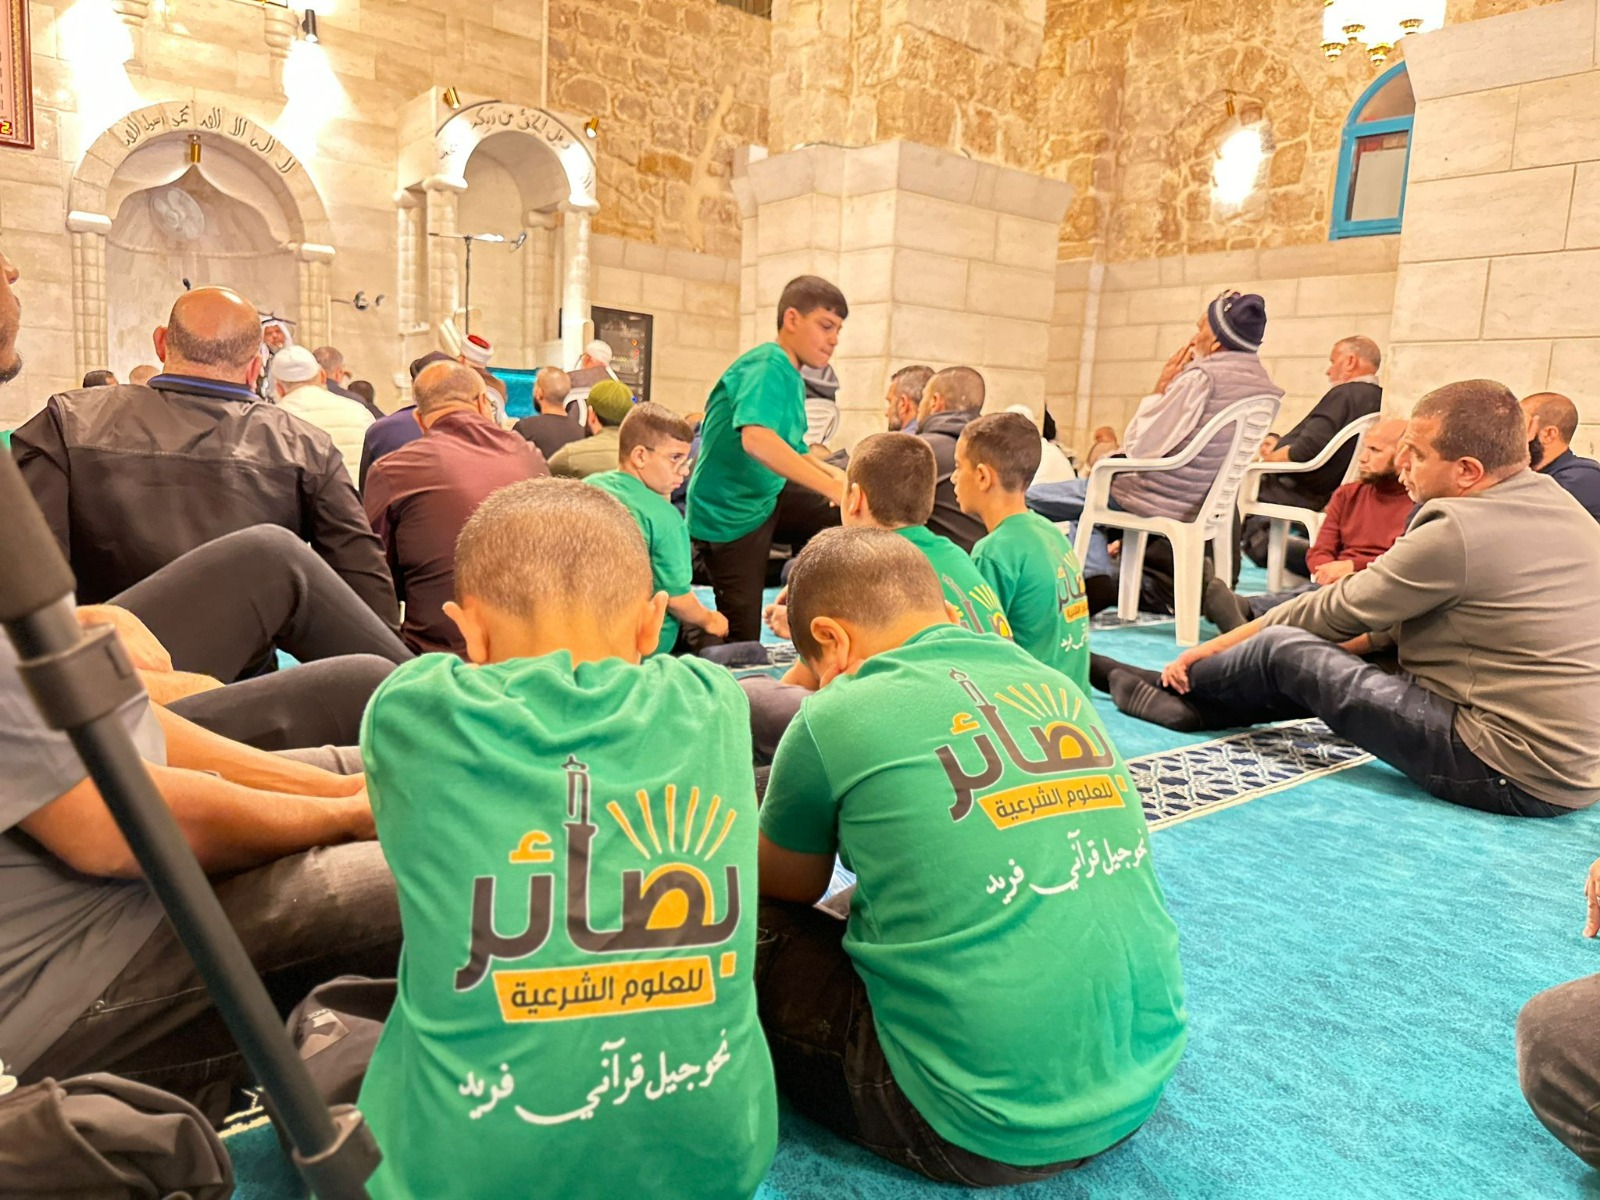 اللد:الإعلان عن انتهاء مشروع ترميم مسجد العمري وسط حضور المئات،صور وفيديو